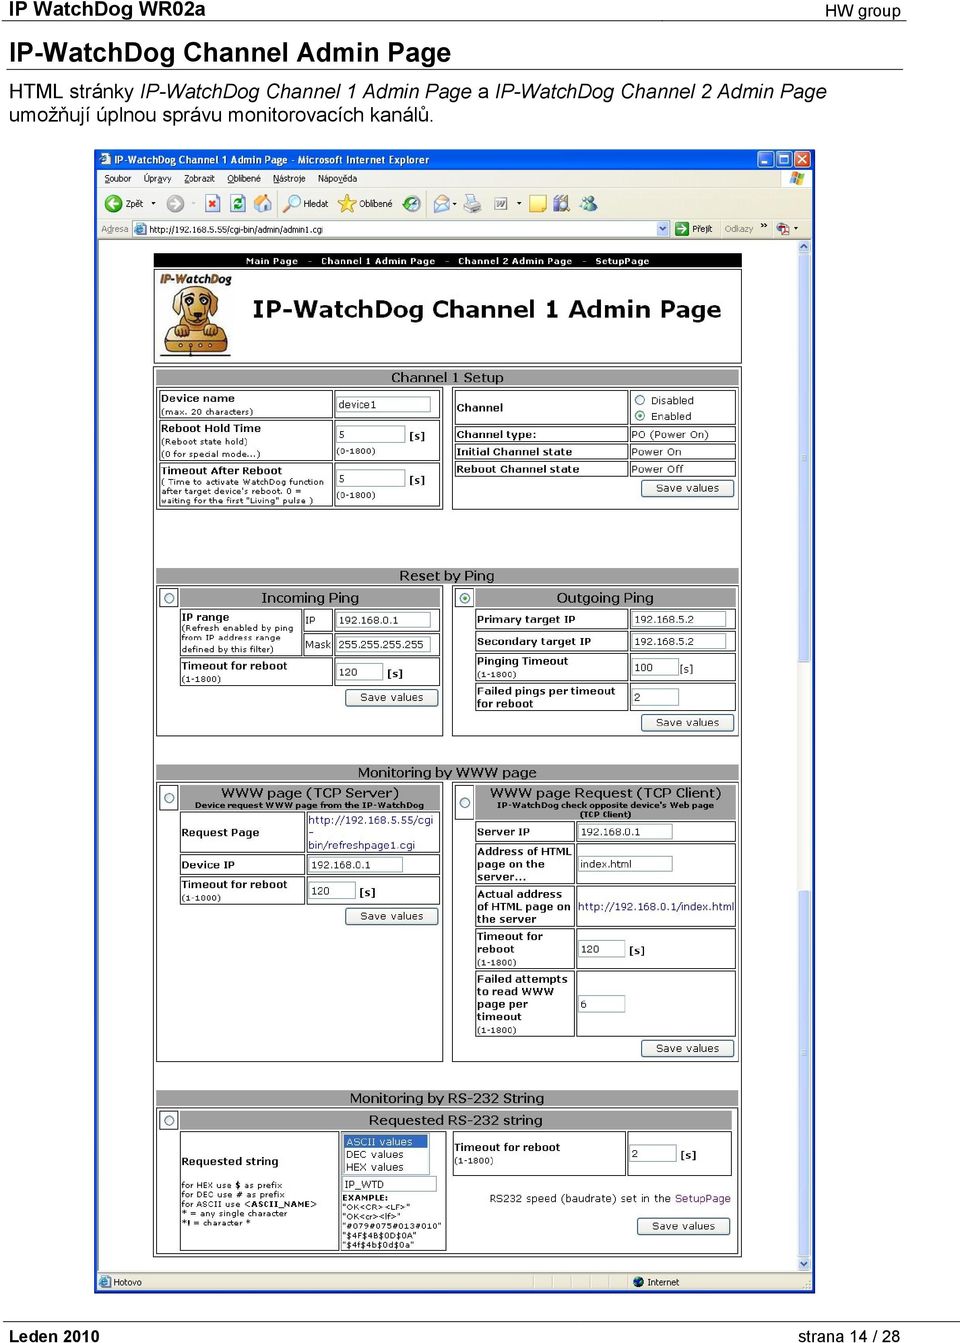 IP-WatchDog Channel 2 Admin Page umožňují